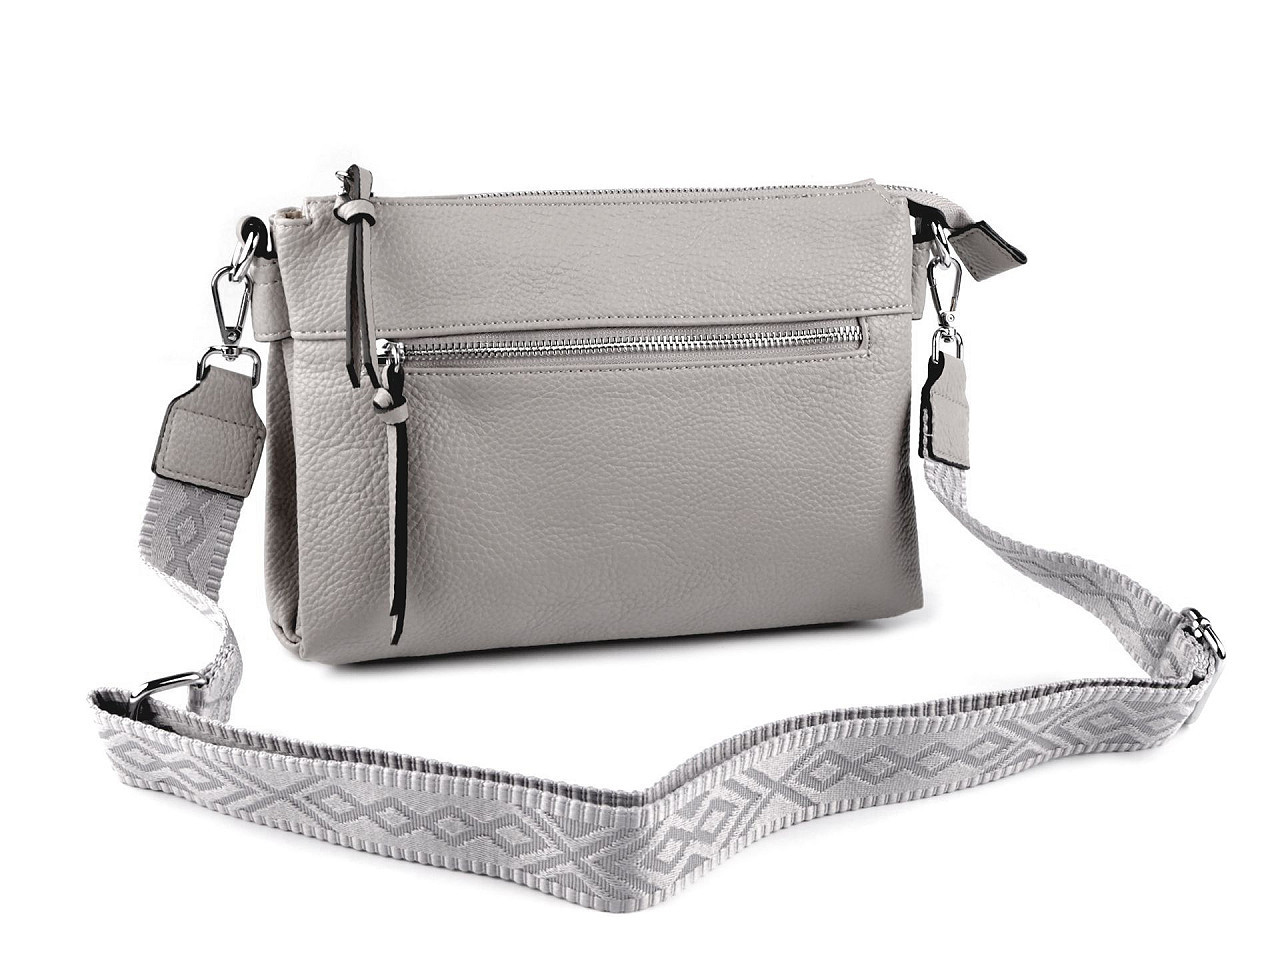 Dámská / dívčí kabelka crossbody s popruhem 28x20 cm, barva 19 šedá světlá